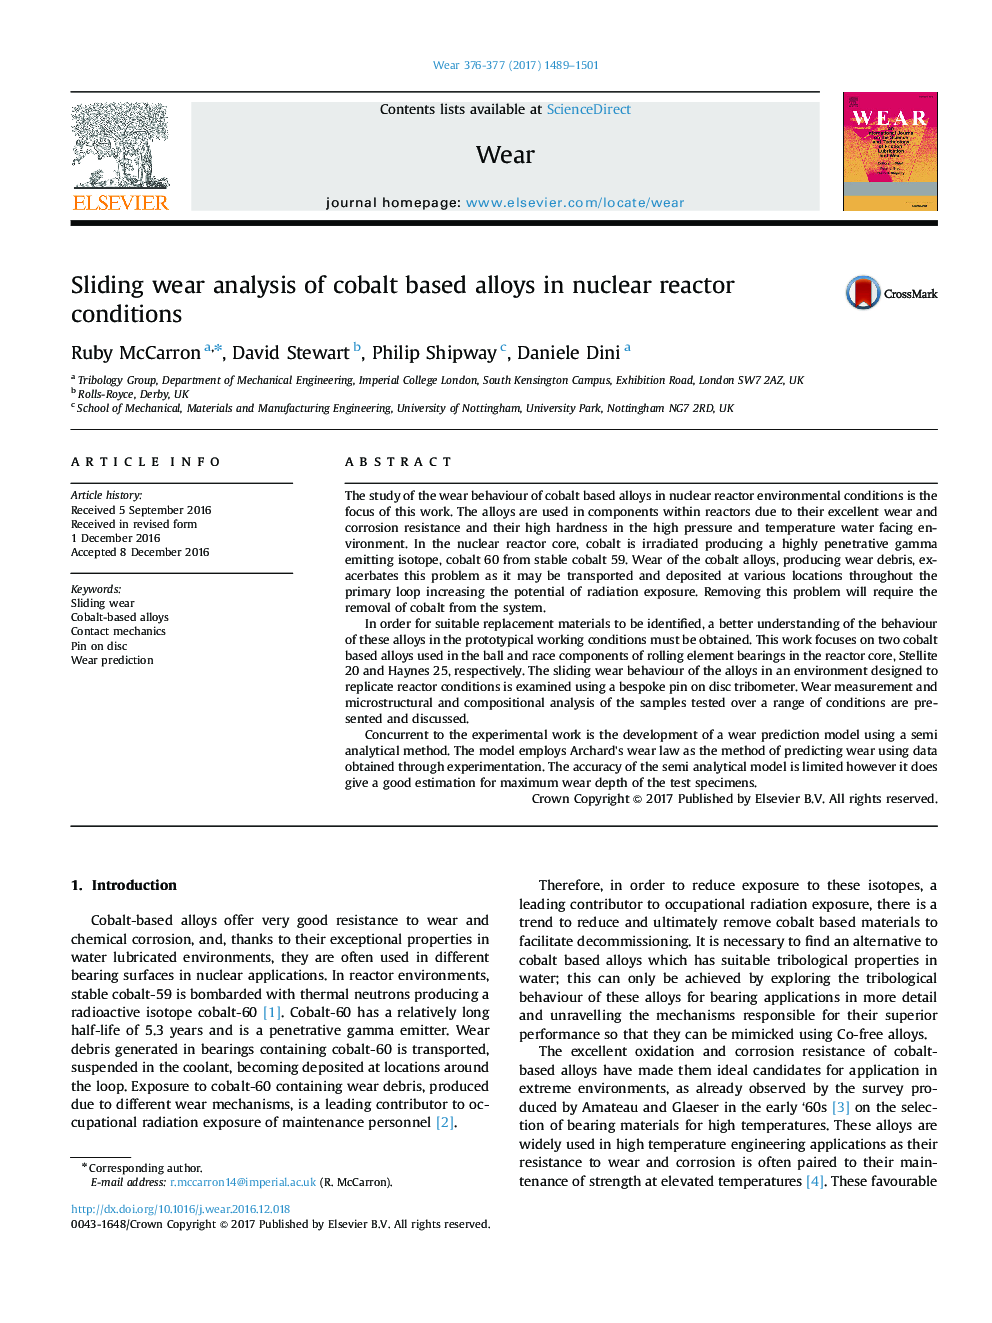 تجزیه و تحلیل پوششی کششی از آلیاژهای پایه کبالت در شرایط راکتور هسته ای 